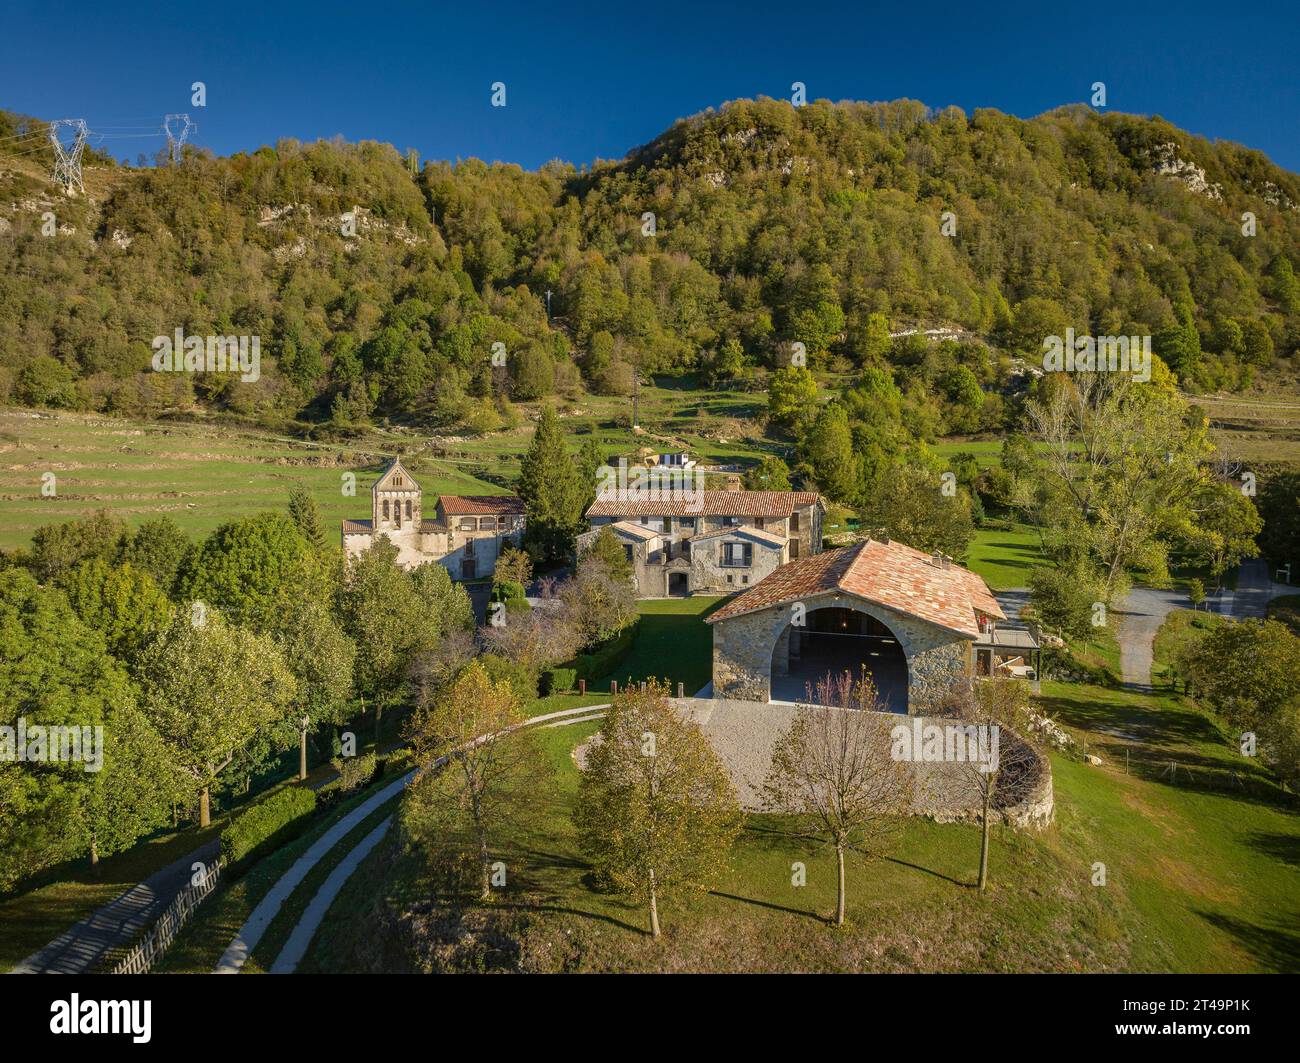 Vista aerea della casa rurale di Cal Pubill e dei dintorni rurali di Ciuret in una mattina d'autunno (Osona, Catalogna, Spagna) Foto Stock